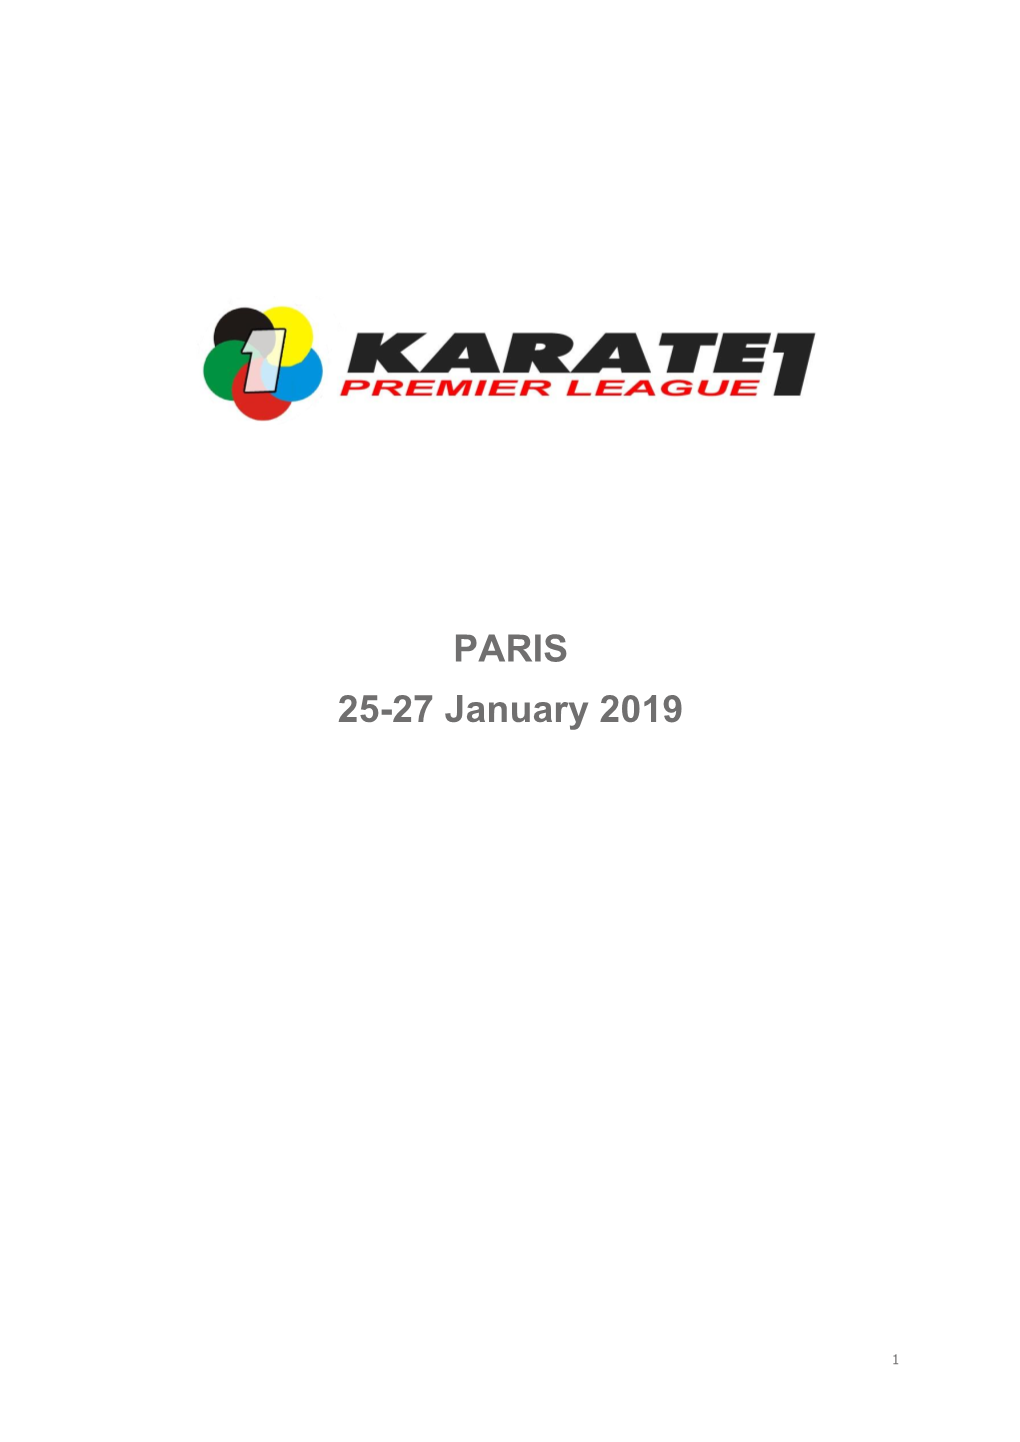 PARIS 25-27 January 2019